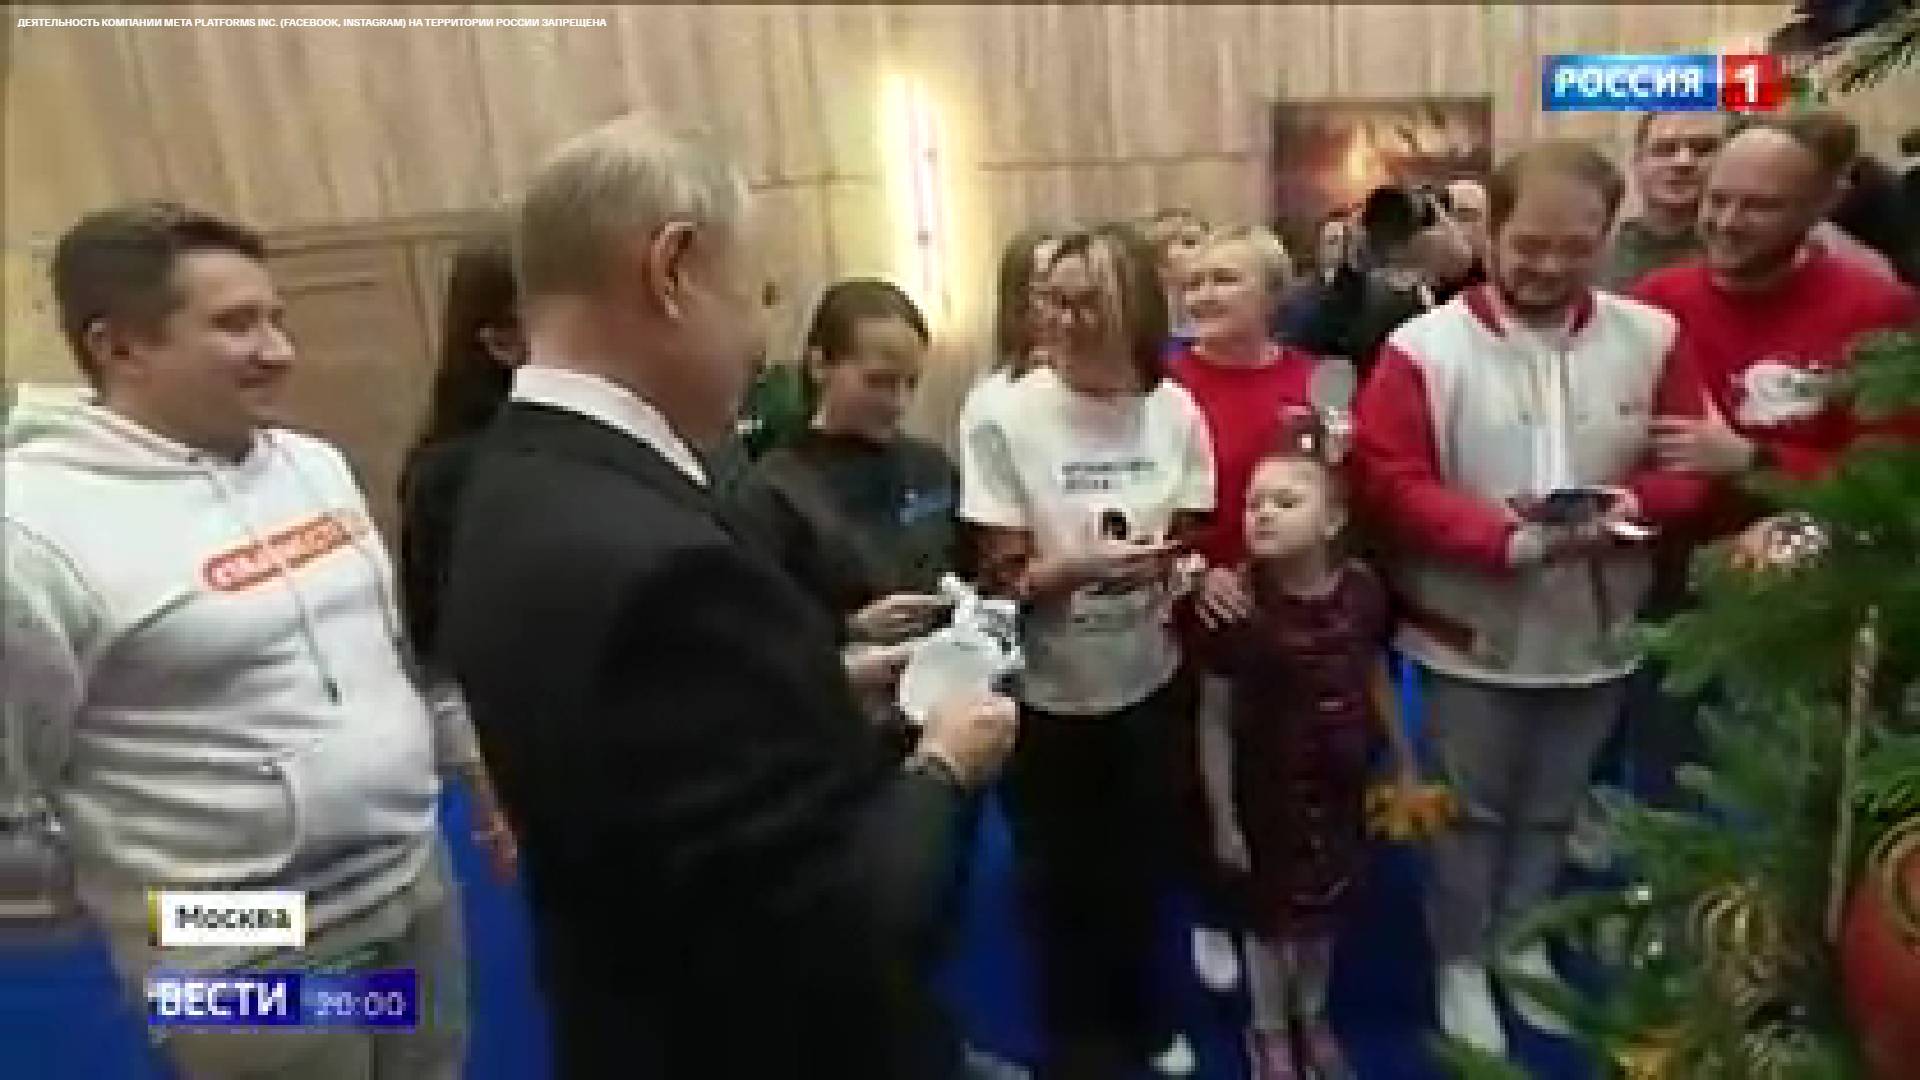 Putin z grupą młodych ludzi i dzieci